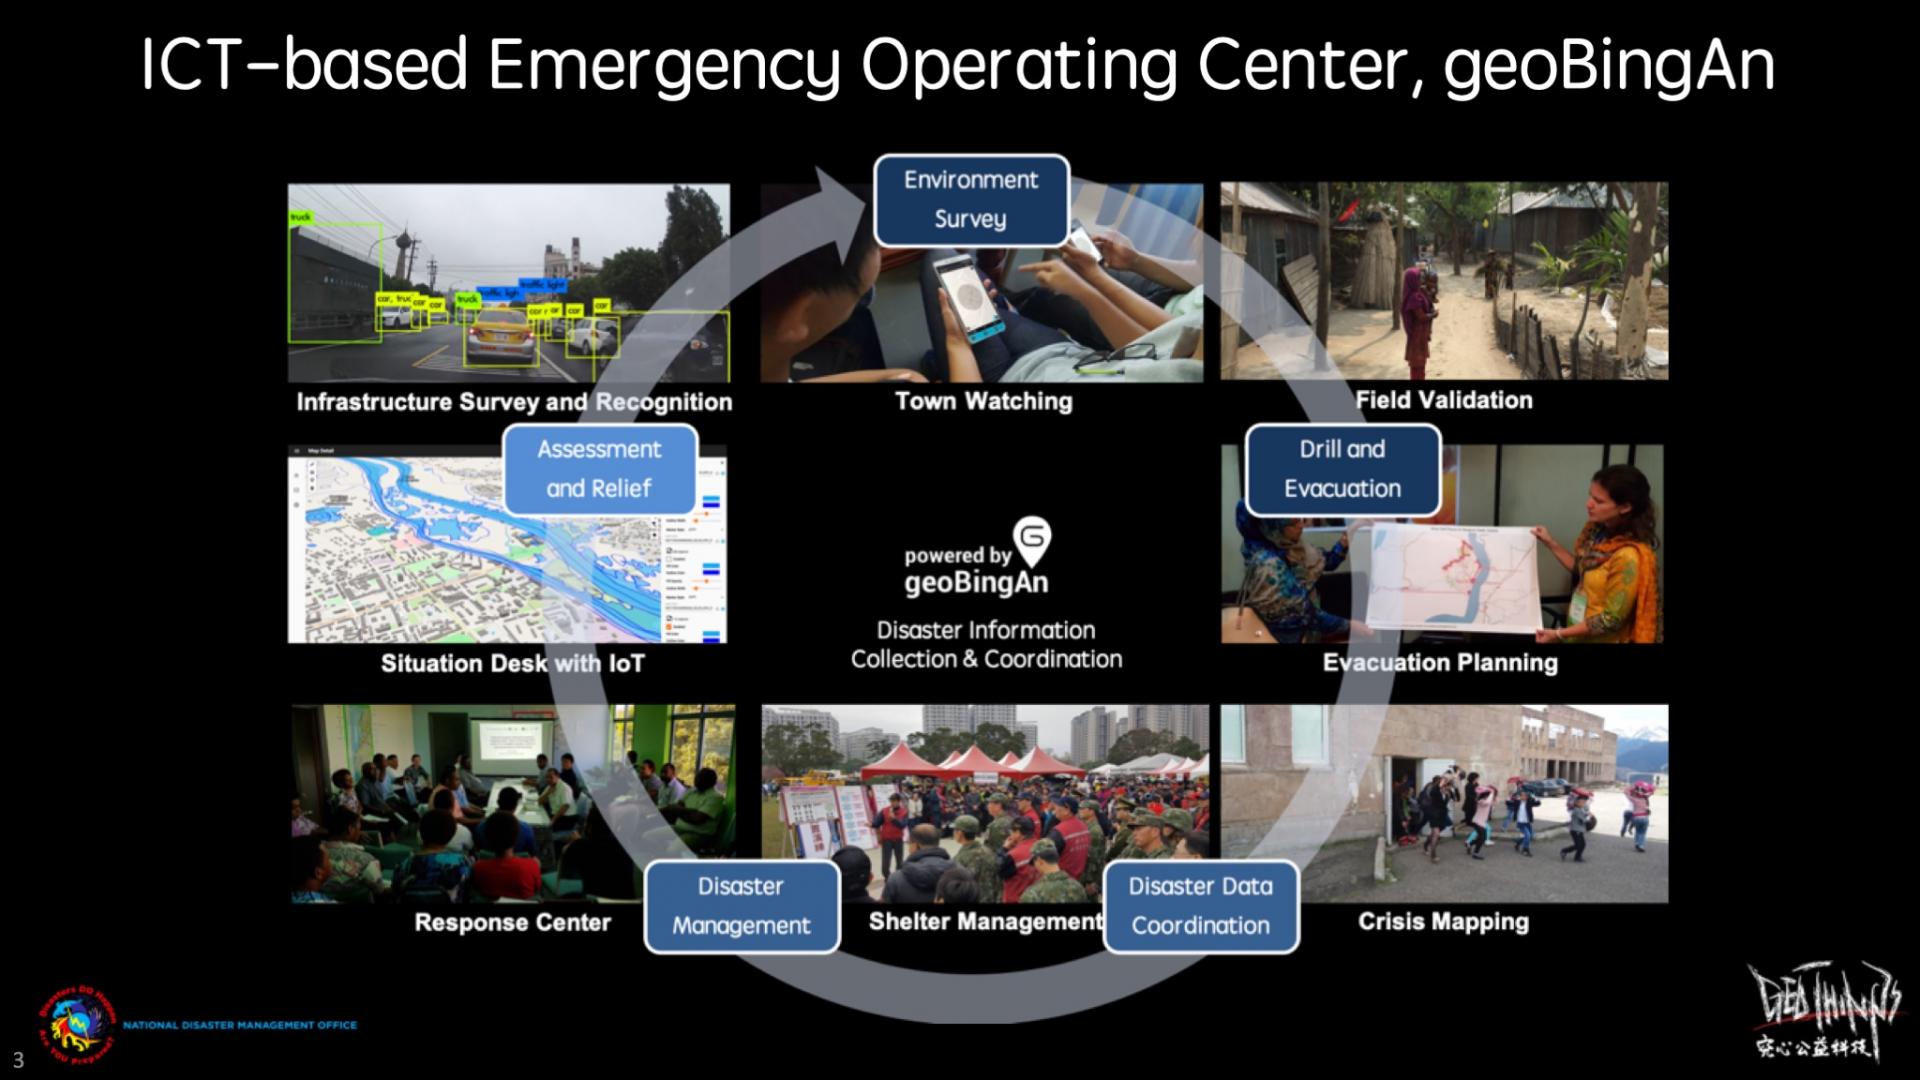 geoBingAn, die humanitäre IKT, ist ein integrierter Dienst, der bei der Reaktion vor, während und nach einer Katastrophe geeignet ist